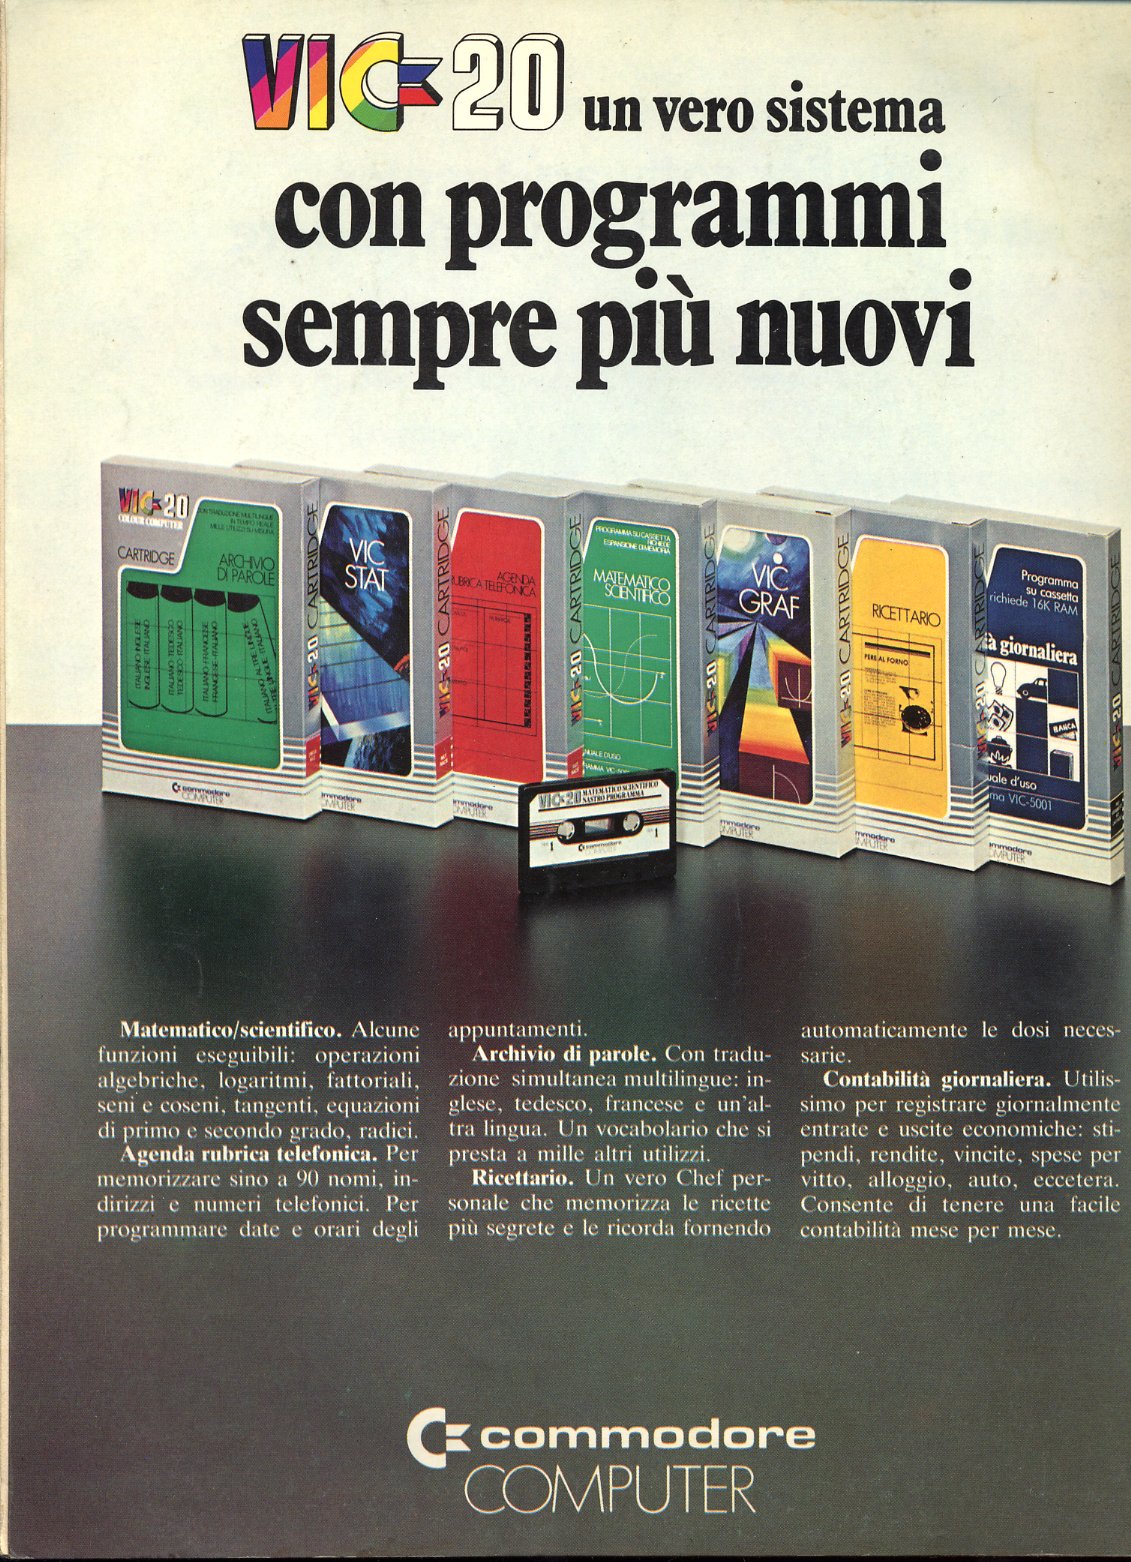 Commodore Vic 20 pubblicità commerciale